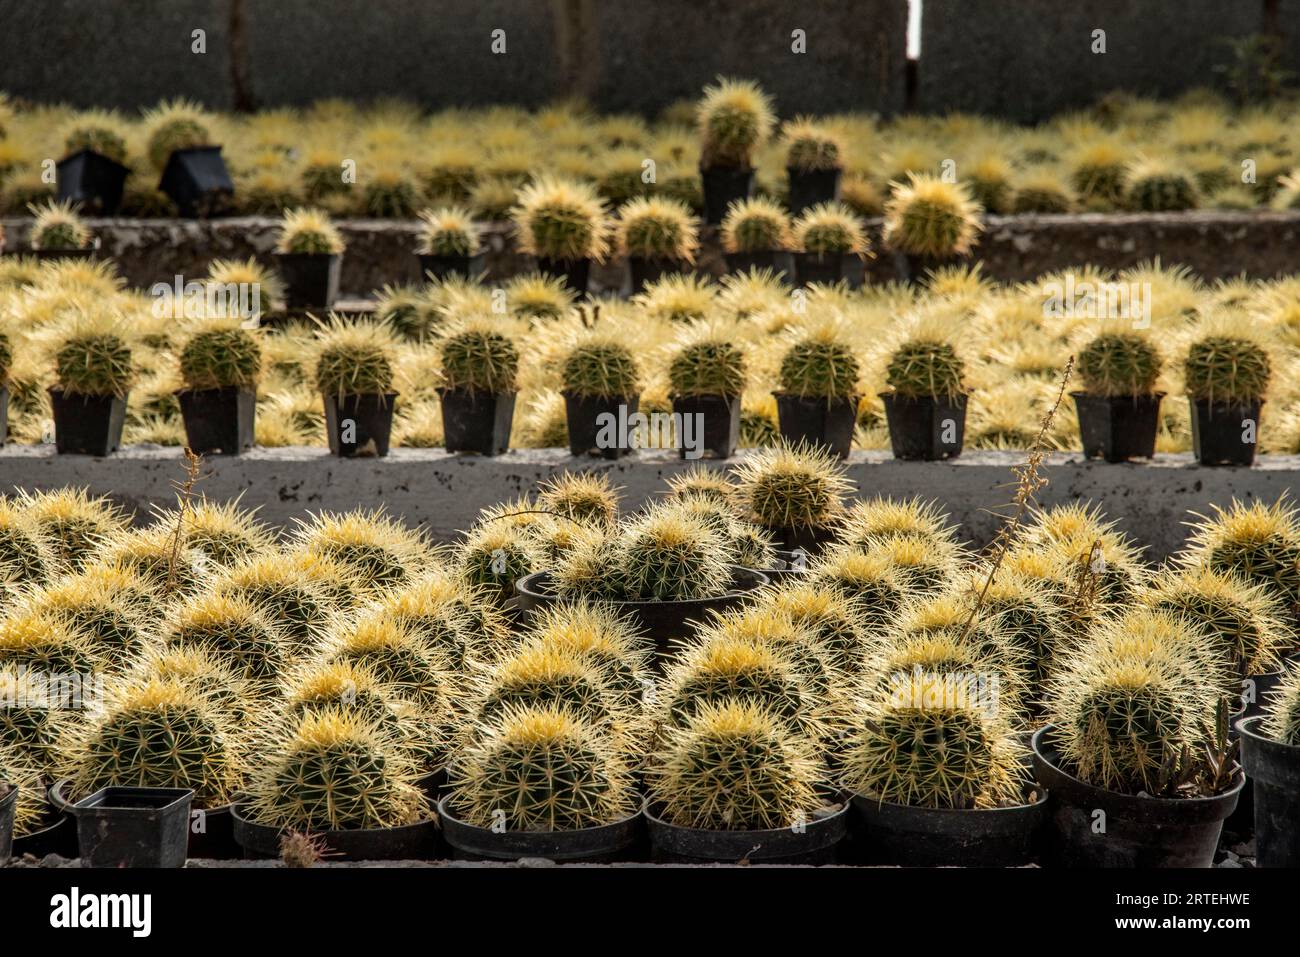 Ausstellung zahlreicher Kaktuspflanzen in Töpfen zum Verkauf, die von einer weiblichen Genossenschaft in Matehuala, Mexiko, zum Verkauf angebaut werden Stockfoto